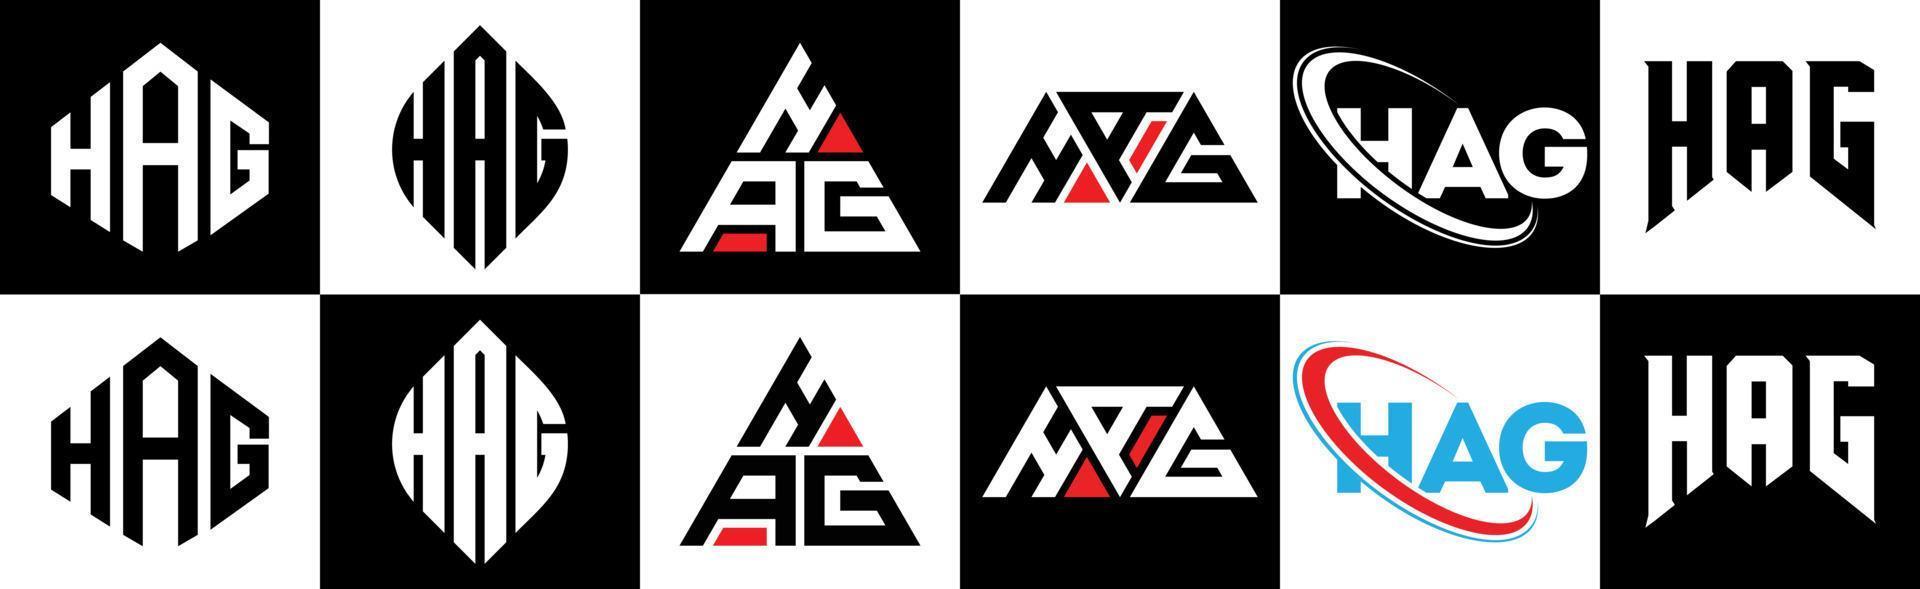 Hex-Buchstaben-Logo-Design in sechs Stilen. Hexenpolygon, Kreis, Dreieck, Sechseck, flacher und einfacher Stil mit schwarz-weißem Buchstabenlogo in einer Zeichenfläche. Hag minimalistisches und klassisches Logo vektor